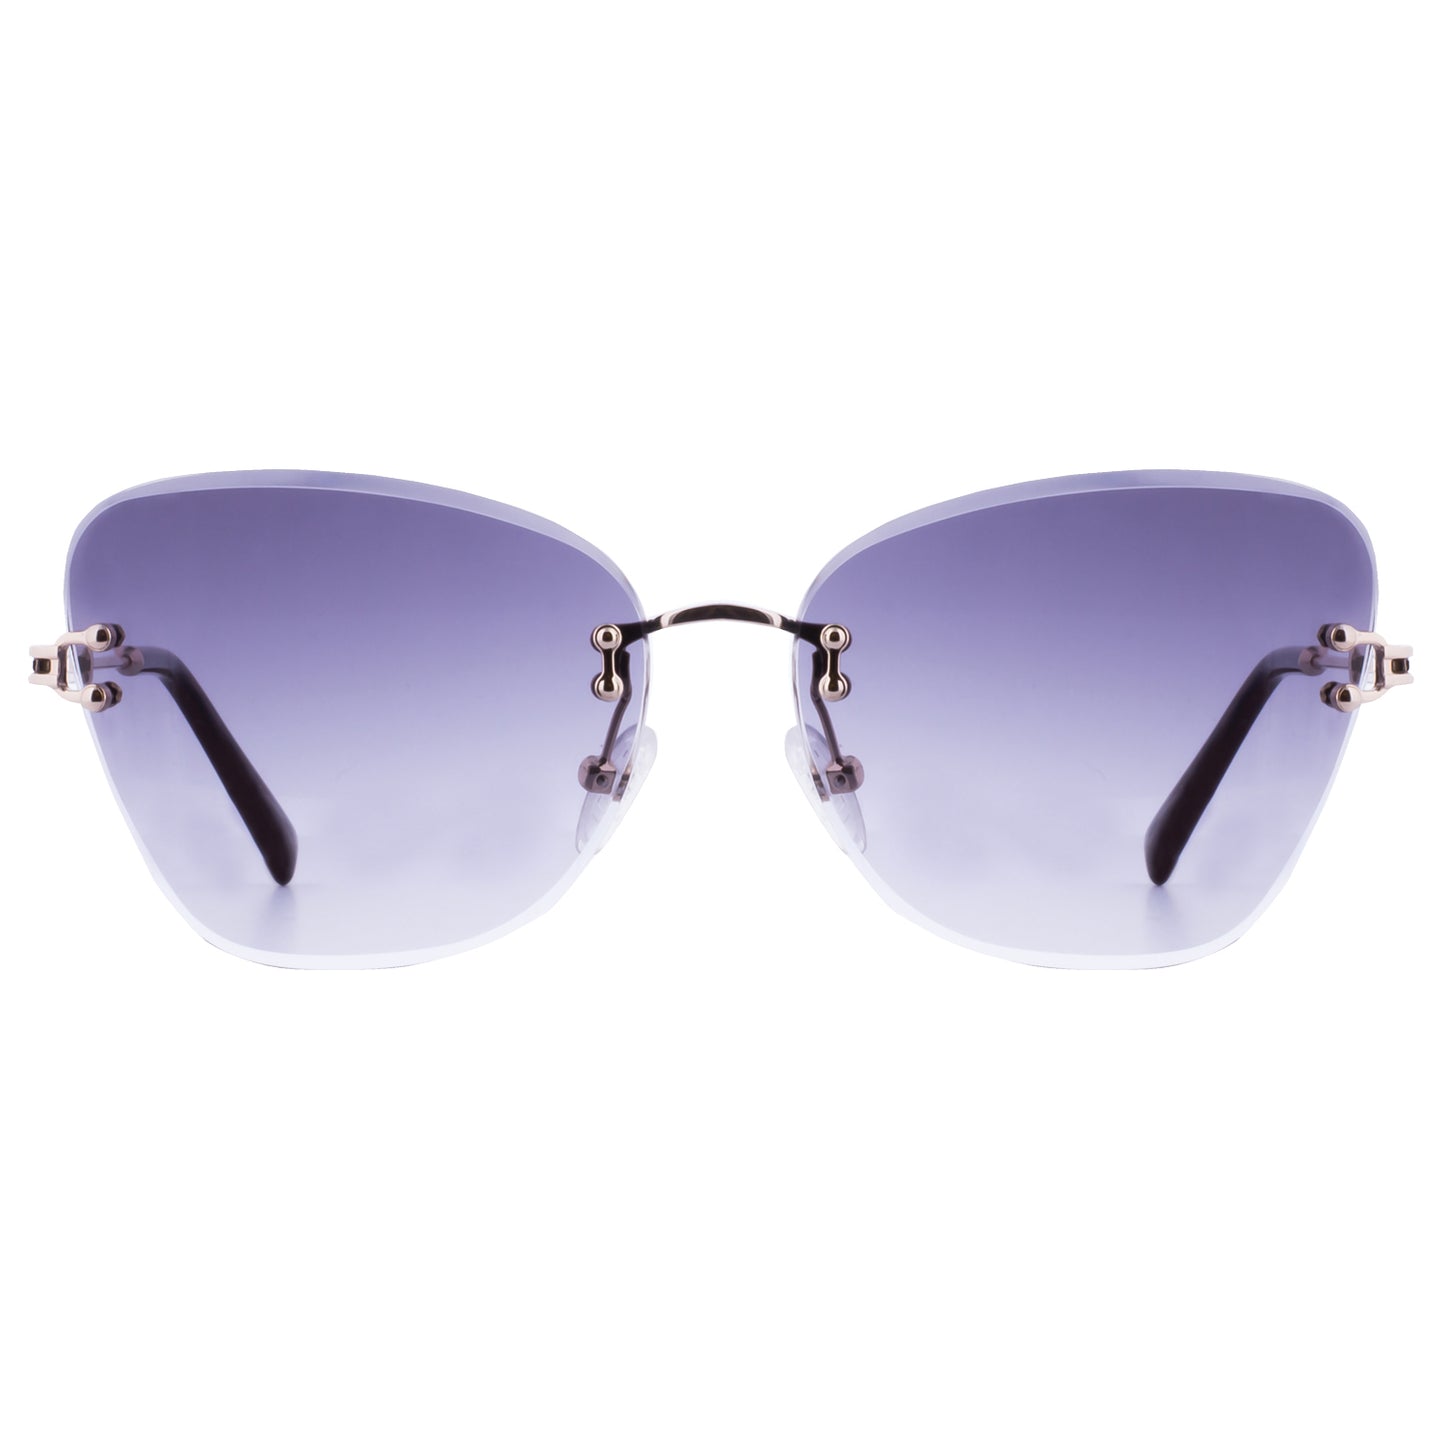 Mokki 90s Butterfly Sunglasses in purple